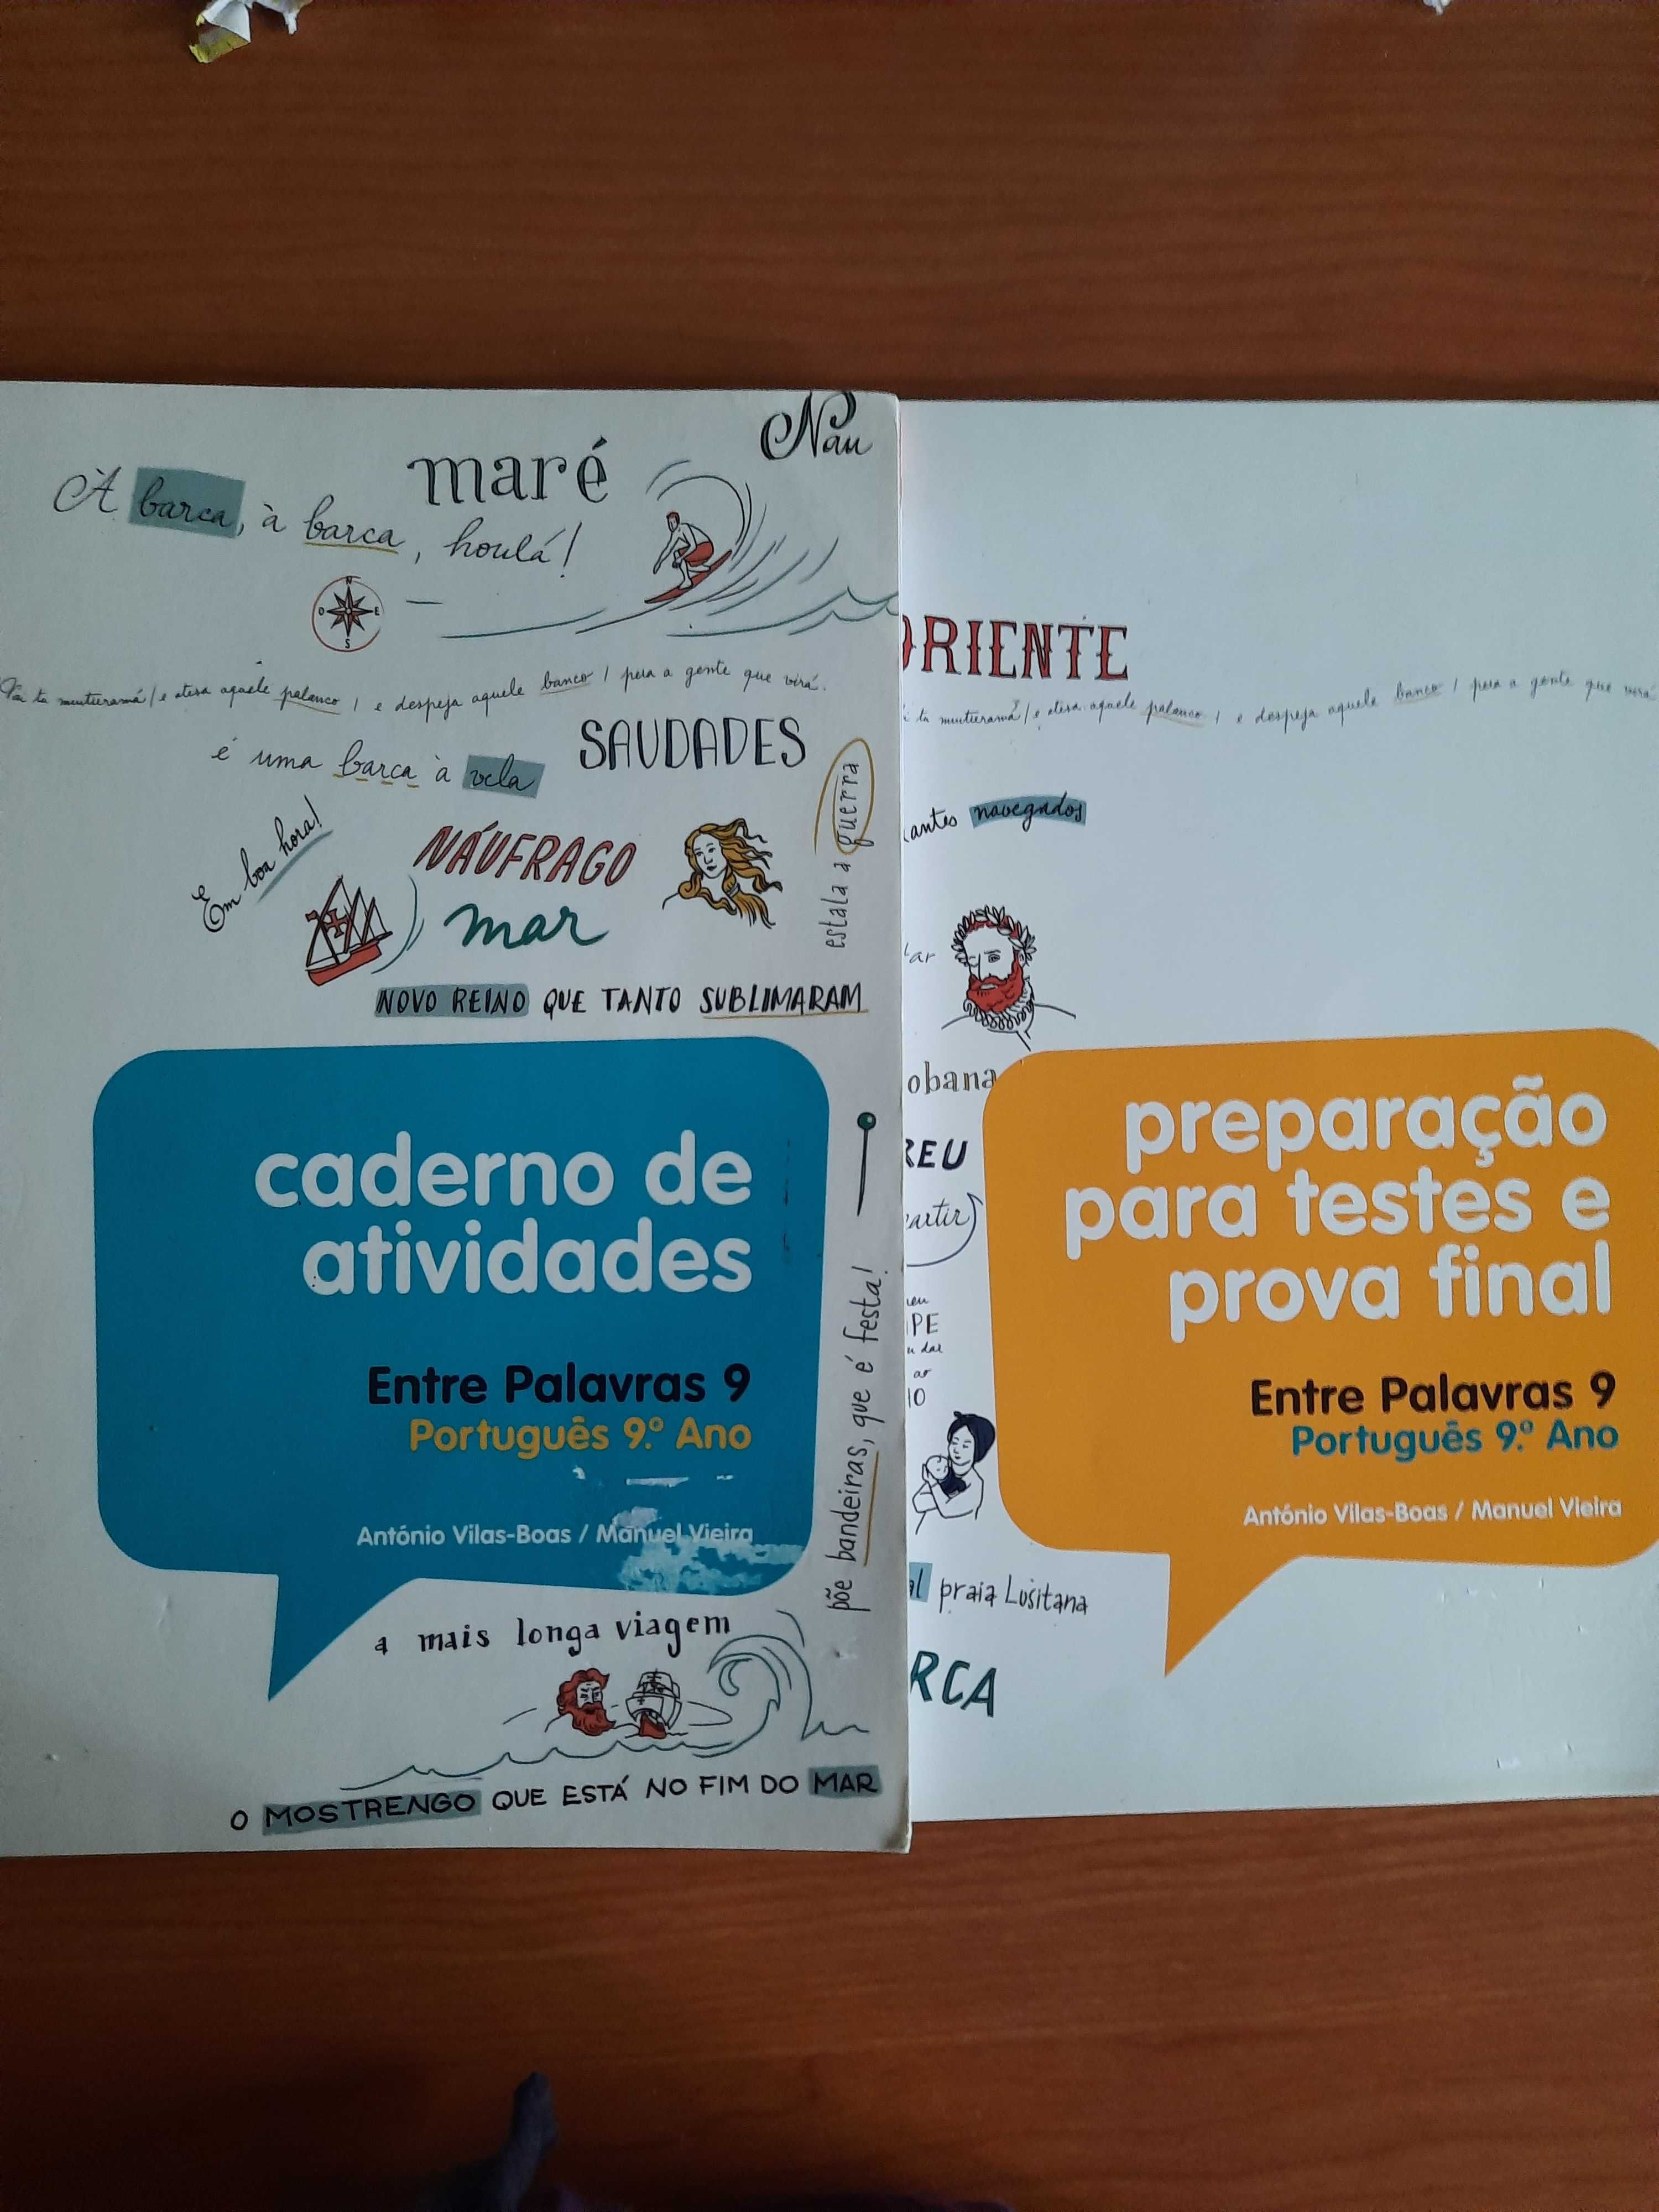 Caderno de atividades de português + oferta de preparação para teste